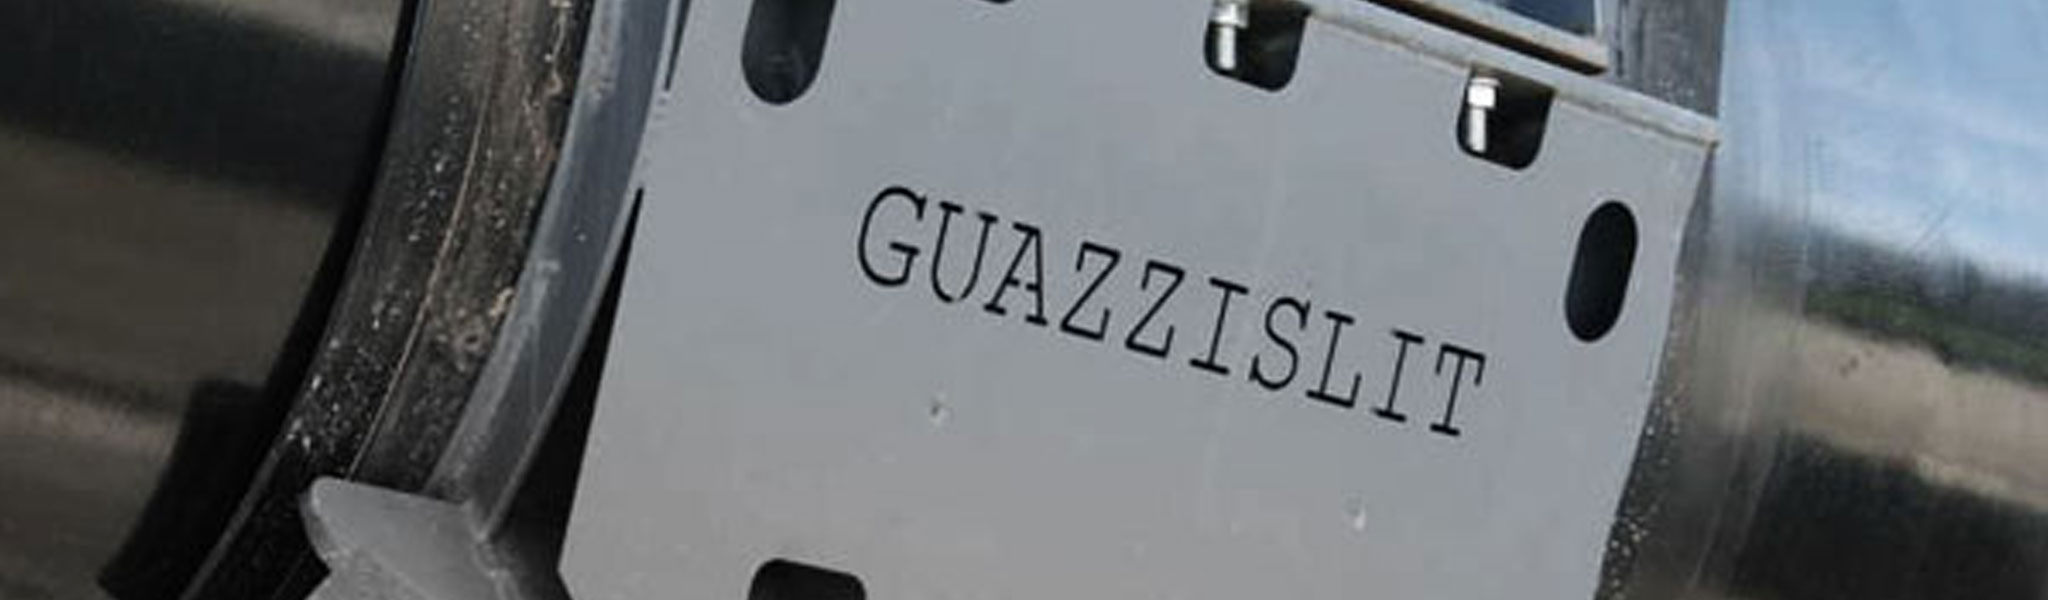 Guazzi Guazzislit